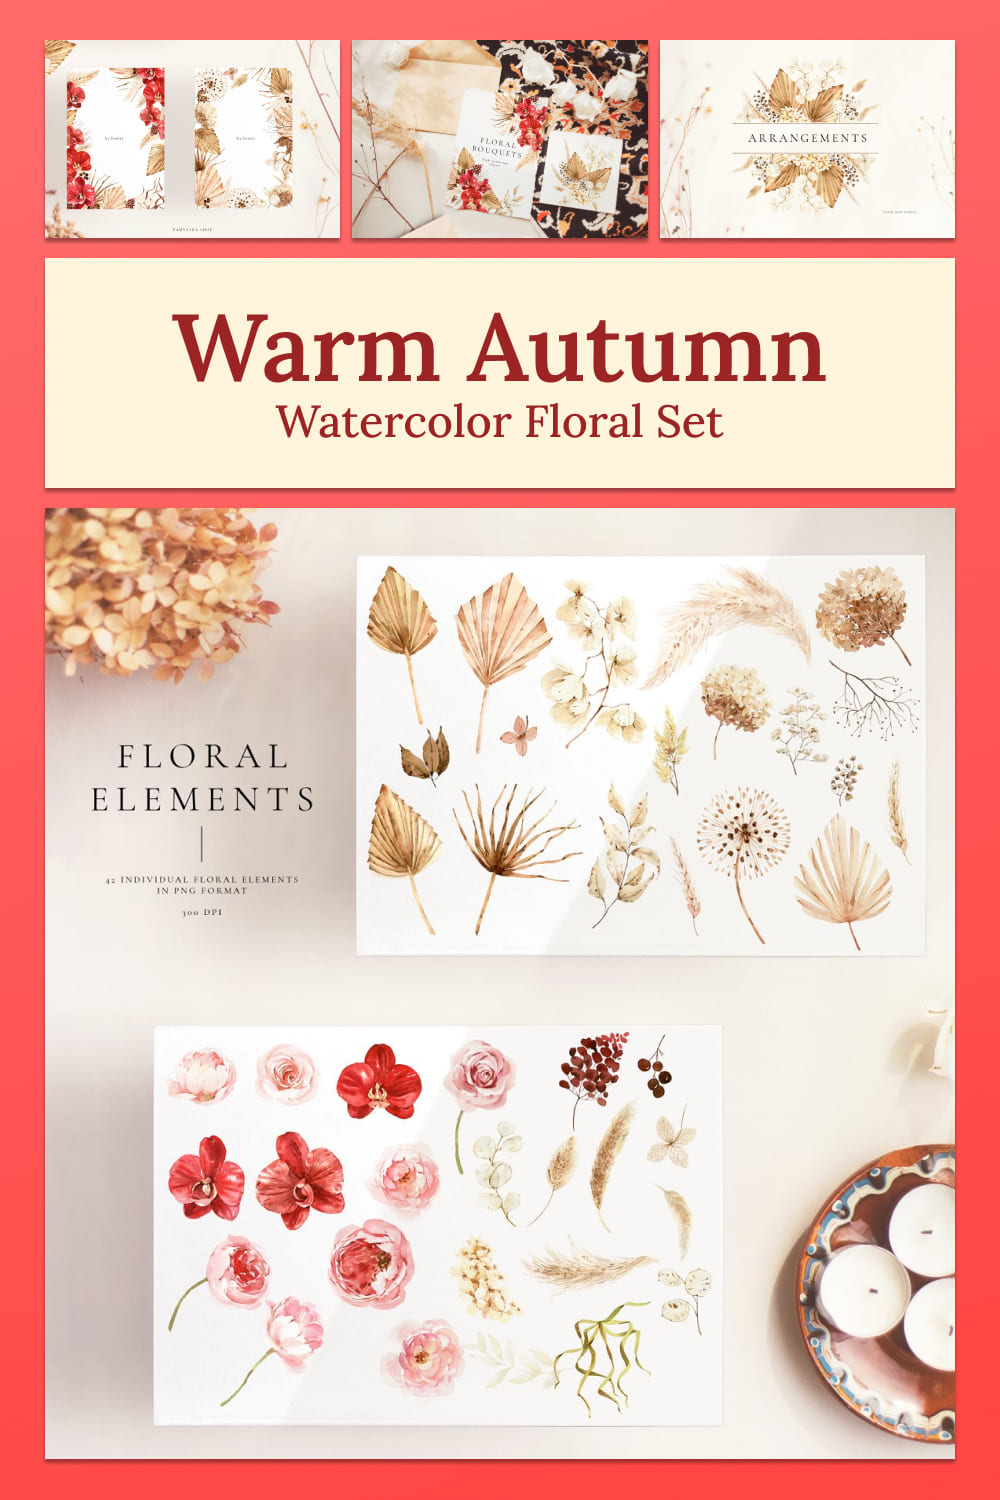 warm autumn watercolor floral set, floral elements.